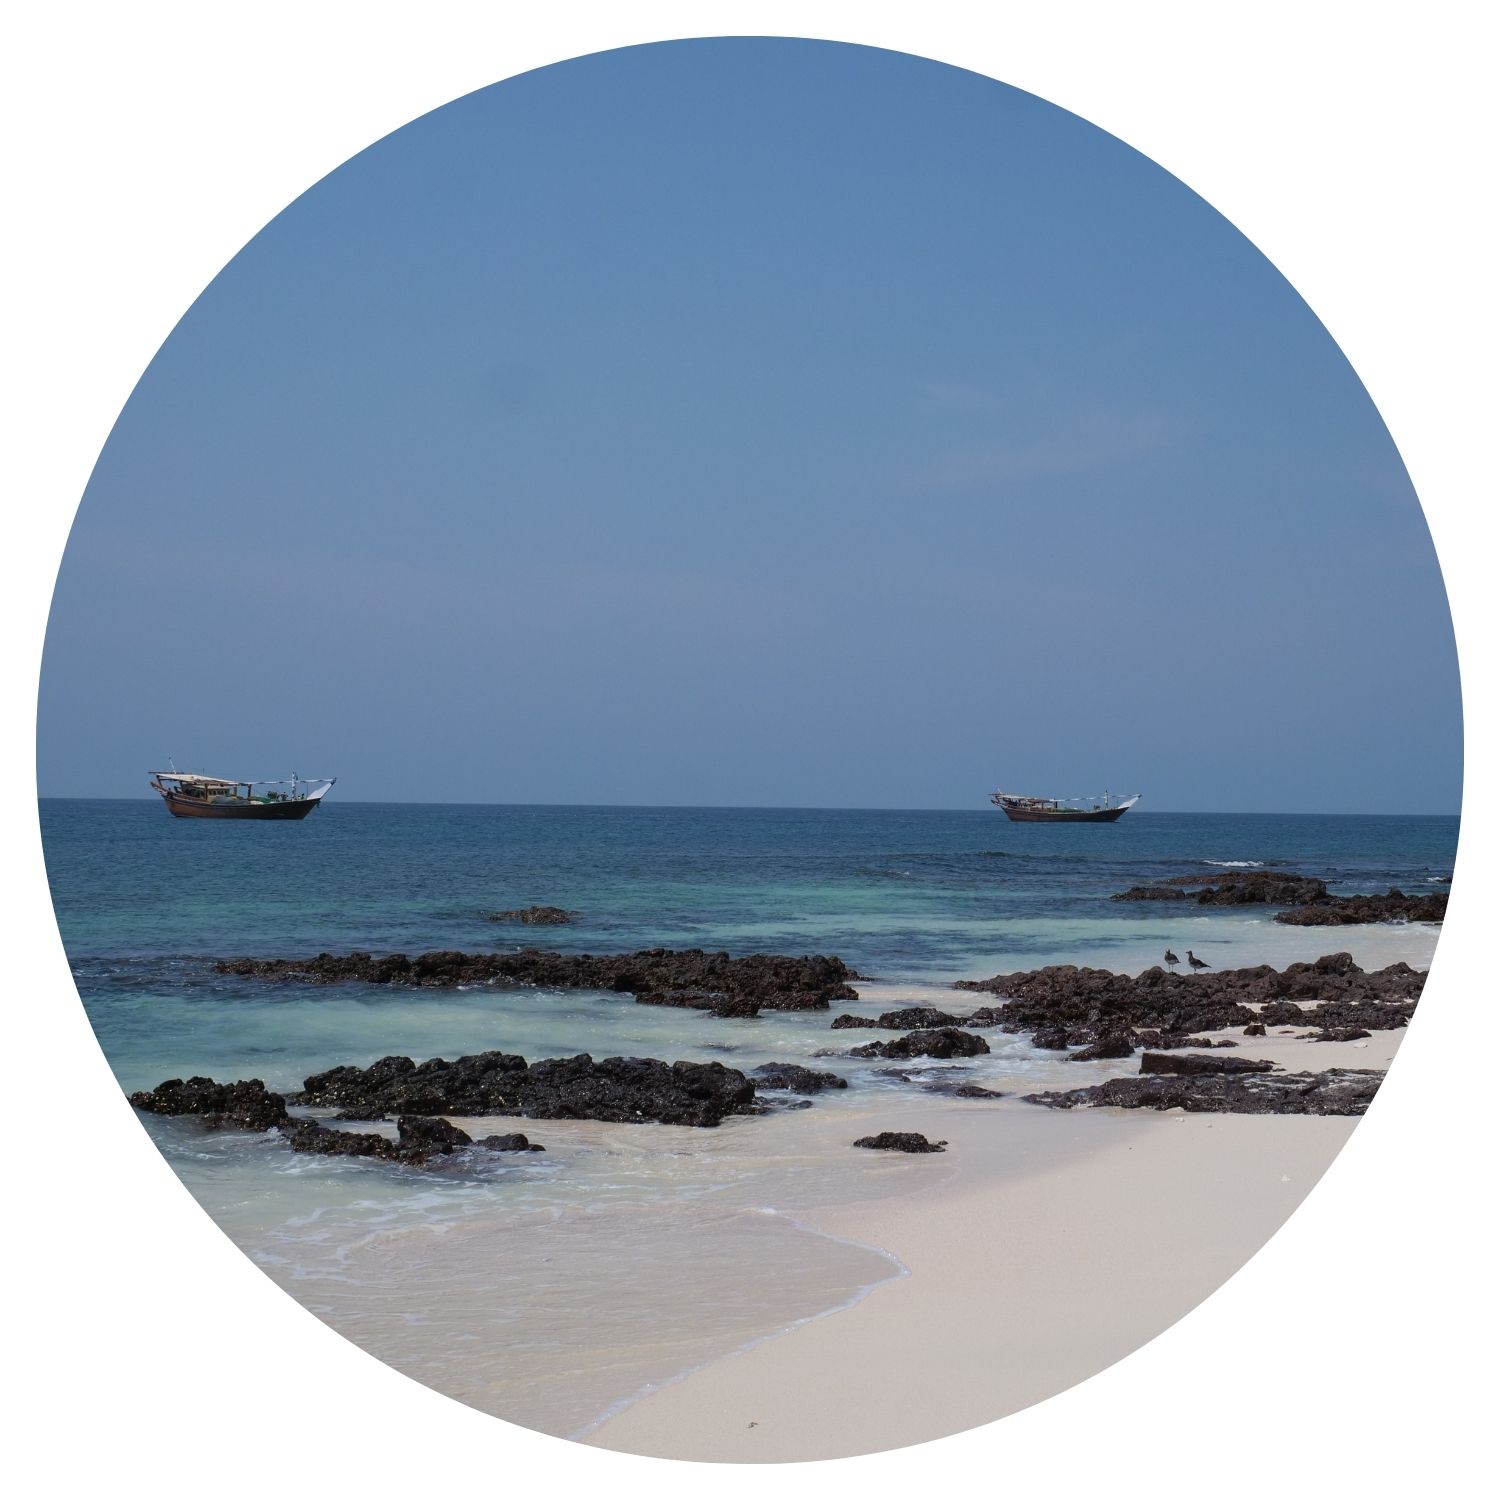 Deux bateaux se dirigent vers le bord de la mer, avec des petits rochers dispersés sur la plage au premier plan. La scène se déroule en Oman, offrant une vue pittoresque de la mer.